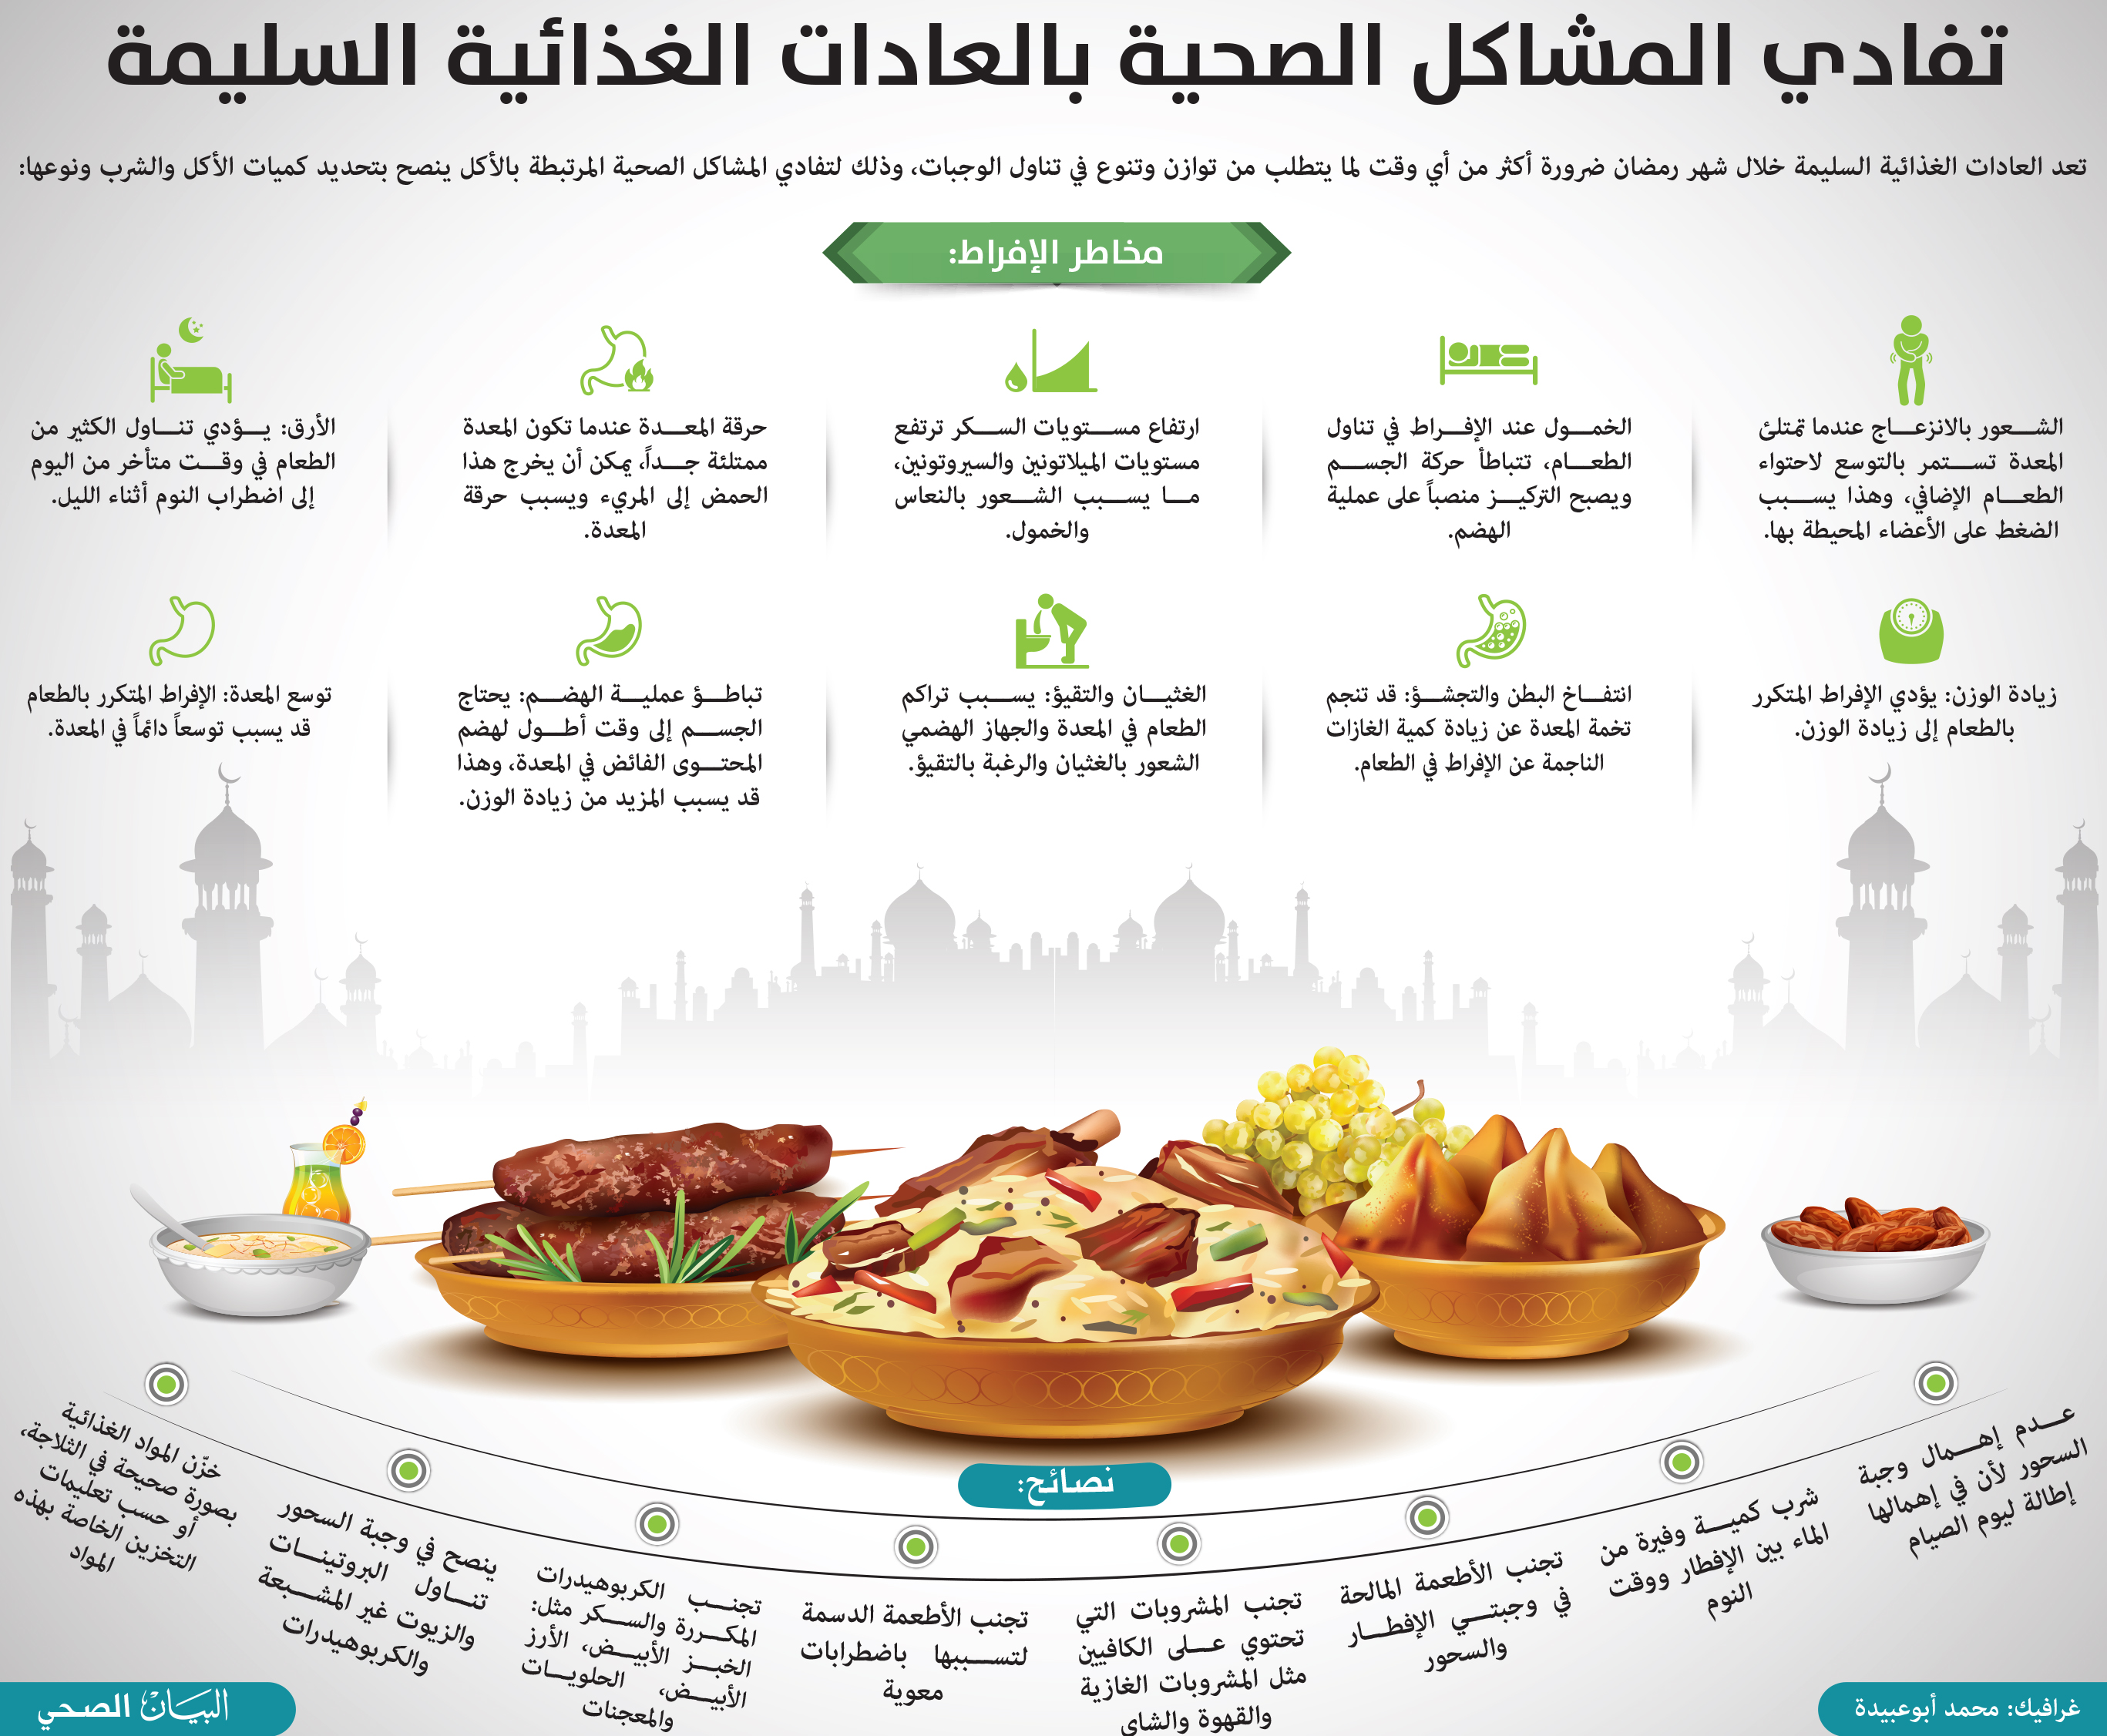 نصائح مهمة للاستعداد النفسي والمادي لرمضان - الغذاء الصحي خلال رمضان